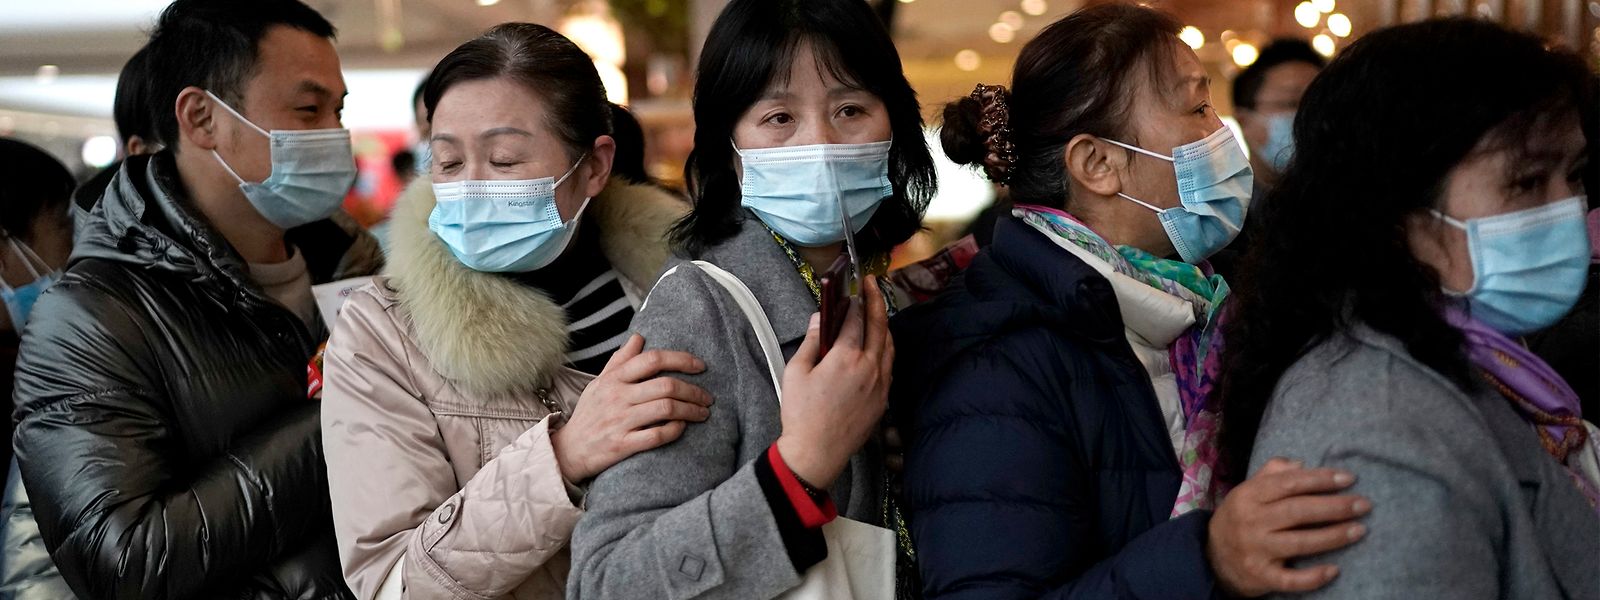 Ein Jahr nach dem Ausbruch der Corona-Pandemie drängeln sich die Einwohner Wuhans dicht an dicht beim Einkauf. Lediglich die Schutzmasken erinnern noch an Covid-19.